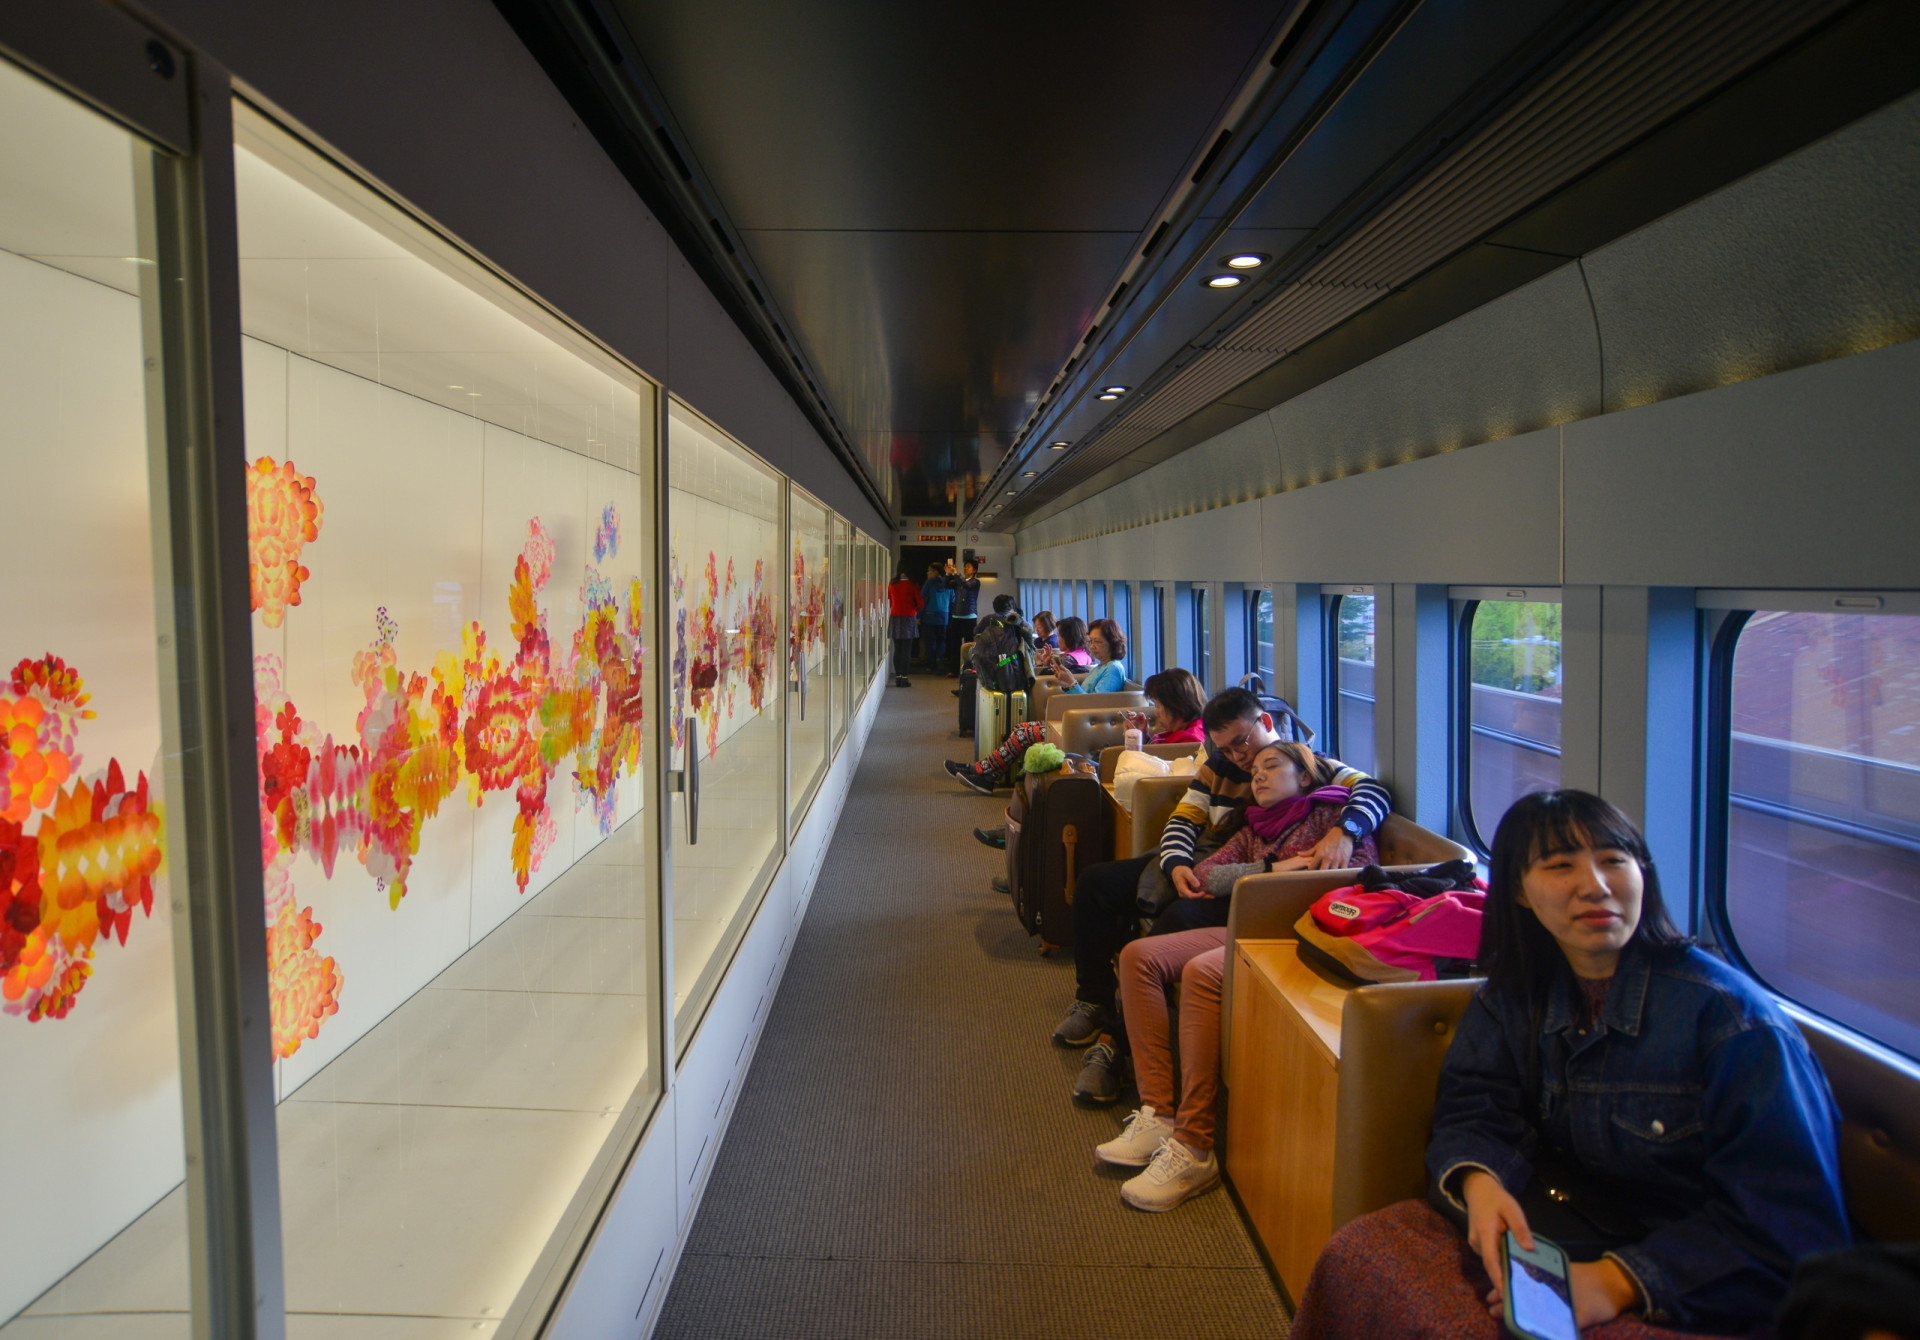 <p>Au Japon, vous trouverez également des trains à thème très intéressants. La photo montre le Genbi Shinkansen, qui présente des installations réalisées par un certain nombre d'artistes.</p><p>Tu pourrais aussi aimer:<a href="https://www.starsinsider.com/n/440778?utm_source=msn.com&utm_medium=display&utm_campaign=referral_description&utm_content=556788"> Cités disparues: les mystères du passé révélés</a></p>